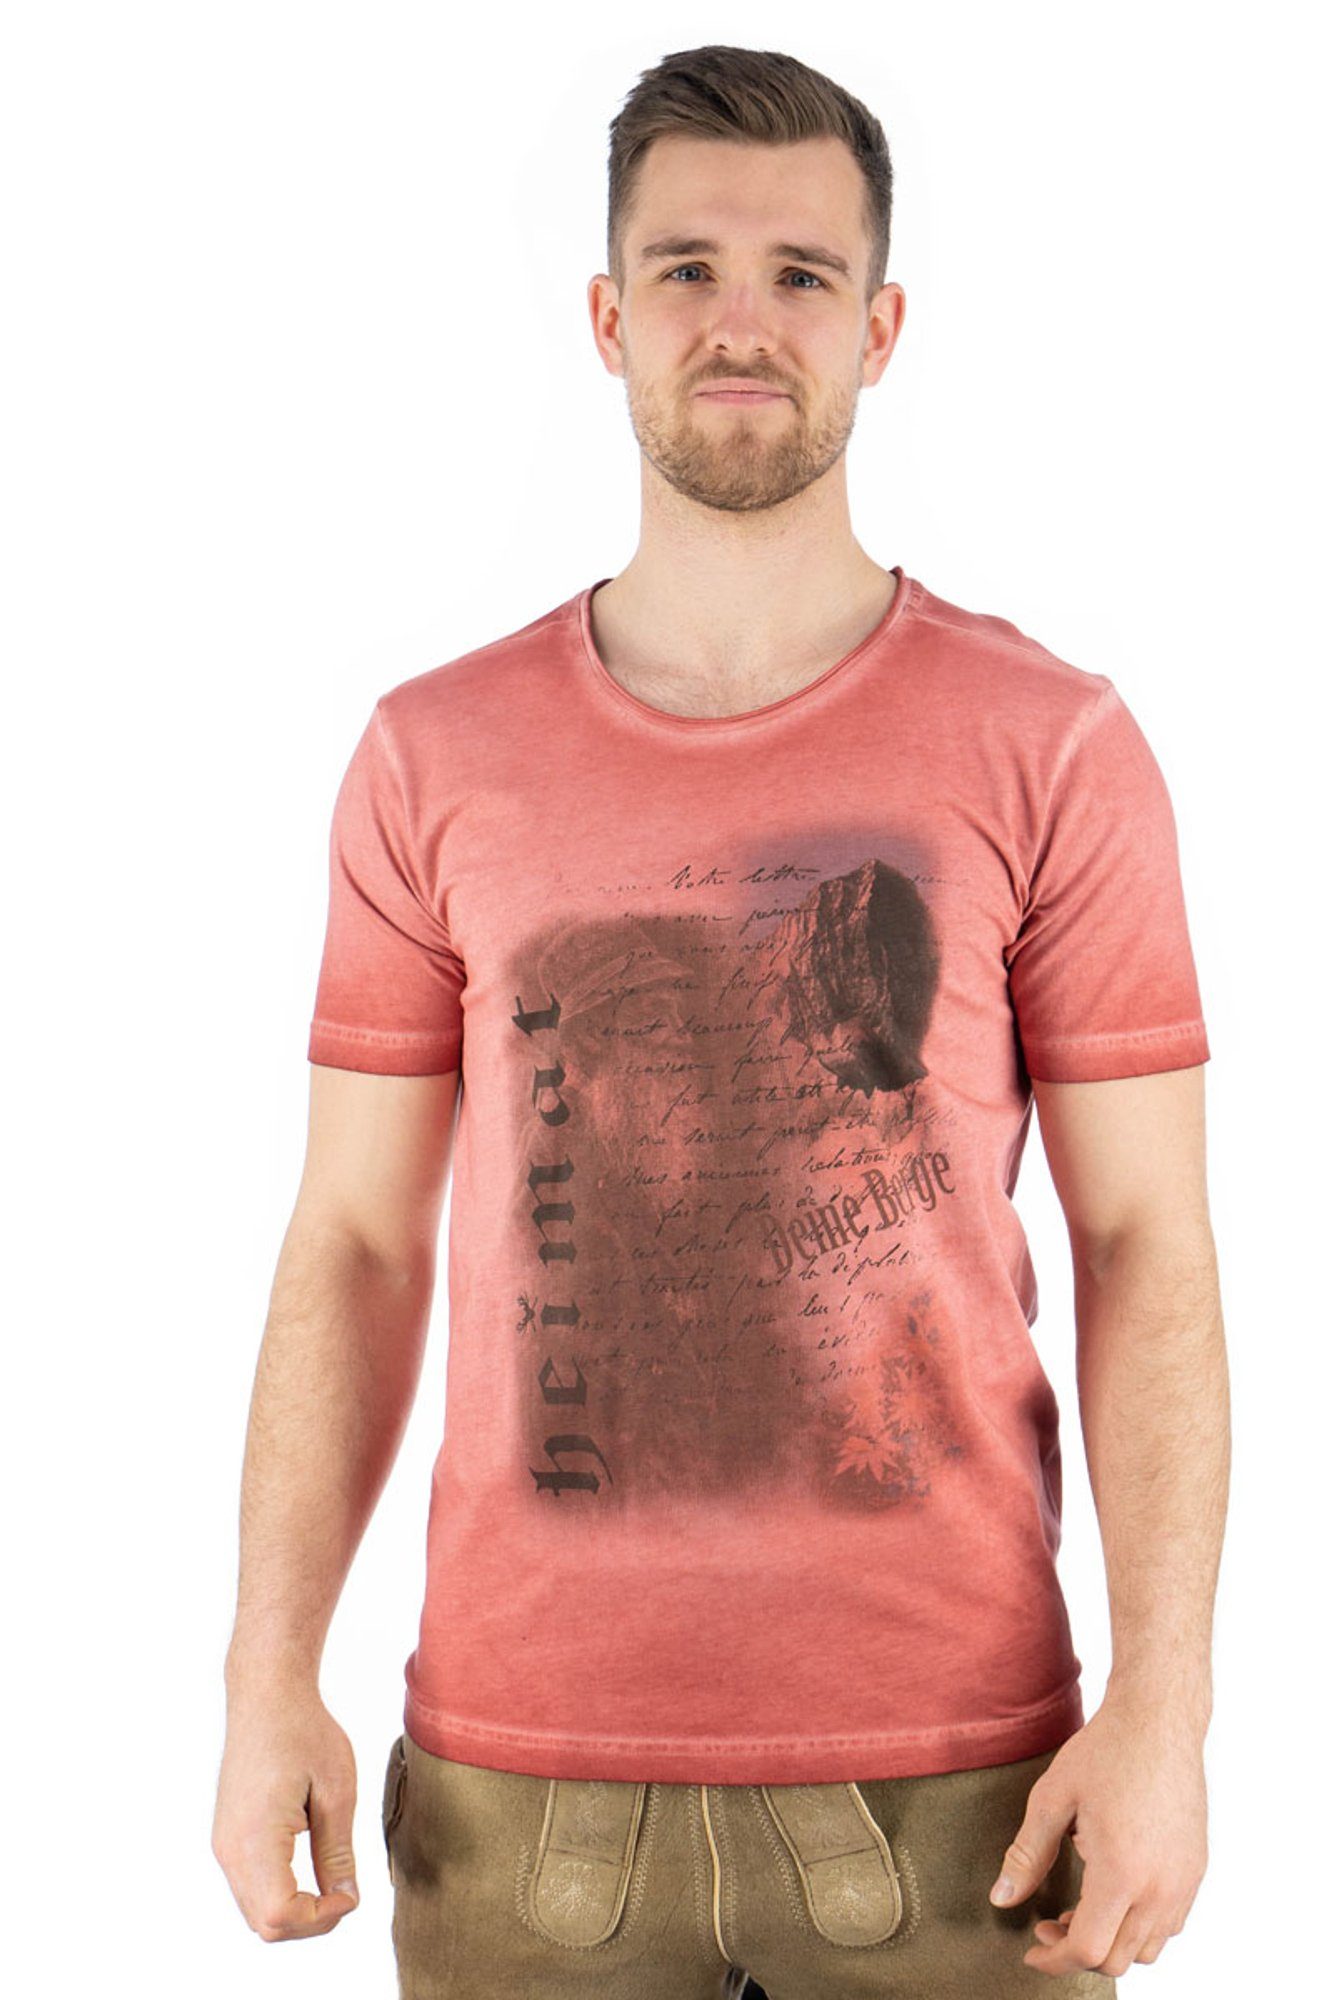 OS-Trachten Trachtenshirt Praiol Kurzarm T-Shirt mit Motivdruck weinrot